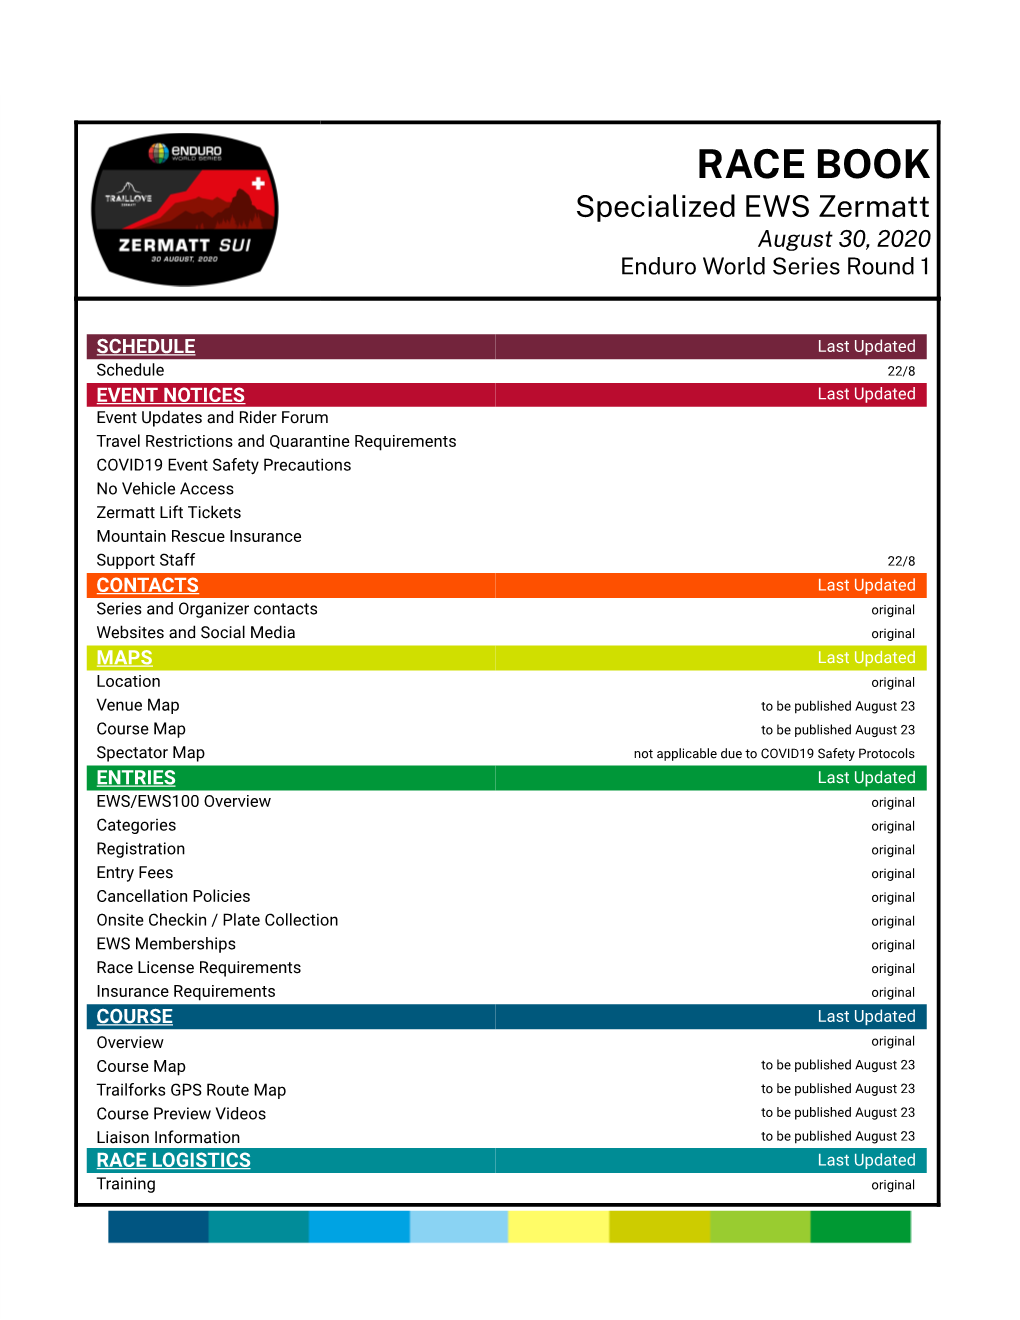 RACE BOOK Specialized EWS Zermatt August 30, 2020 Enduro World Series Round 1